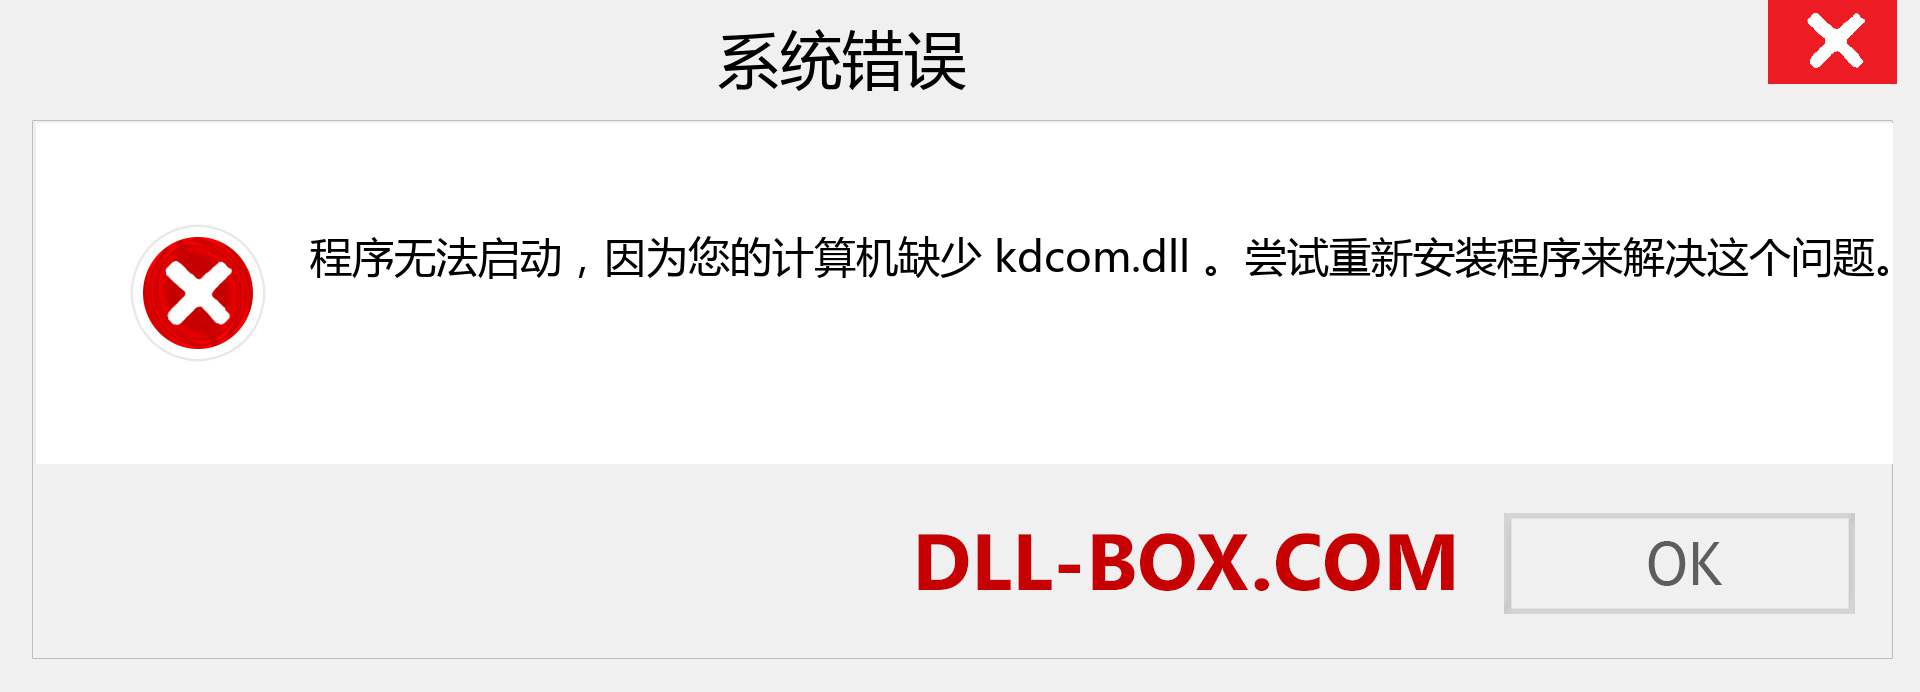 kdcom.dll 文件丢失？。 适用于 Windows 7、8、10 的下载 - 修复 Windows、照片、图像上的 kdcom dll 丢失错误